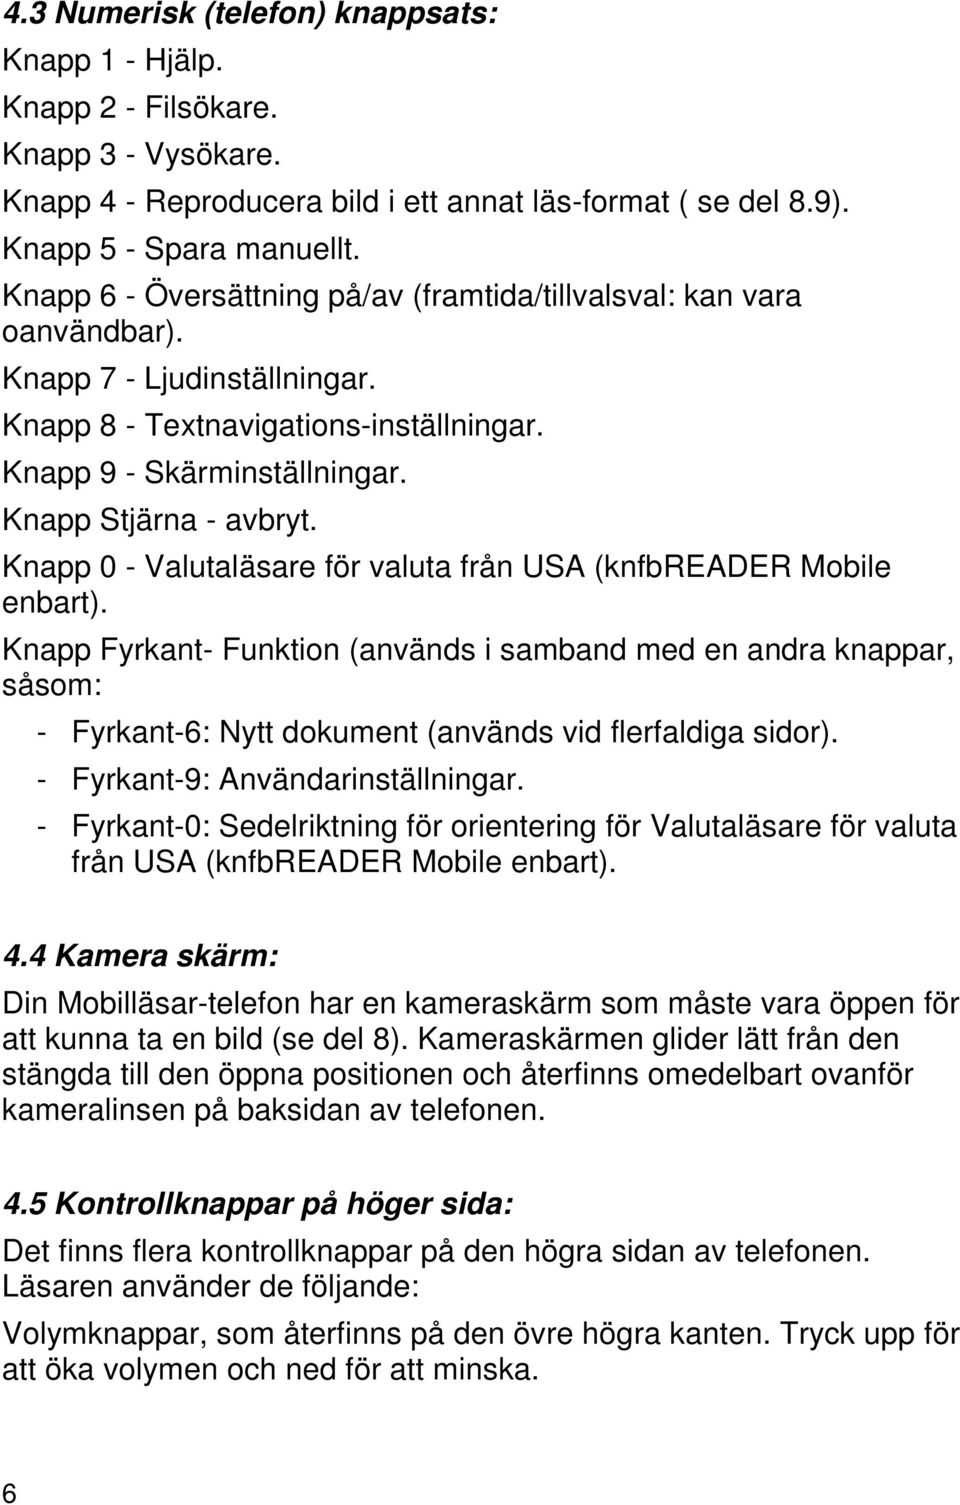 Knapp 0 - Valutaläsare för valuta från USA (knfbreader Mobile enbart).